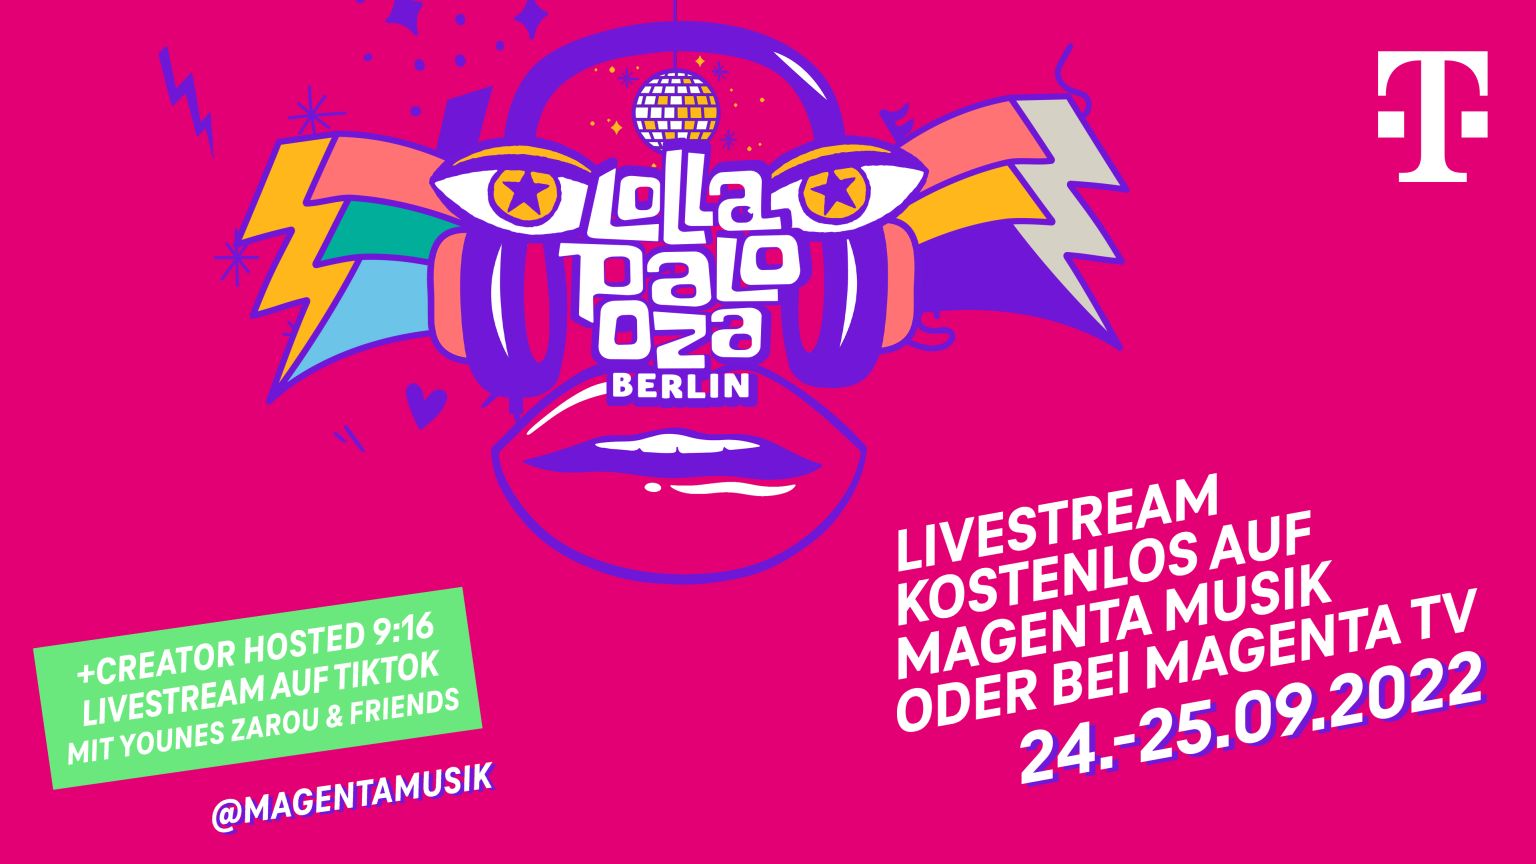 Telekom bringt das Lollapalooza Berlin auf allen Kanälen zu den Fans